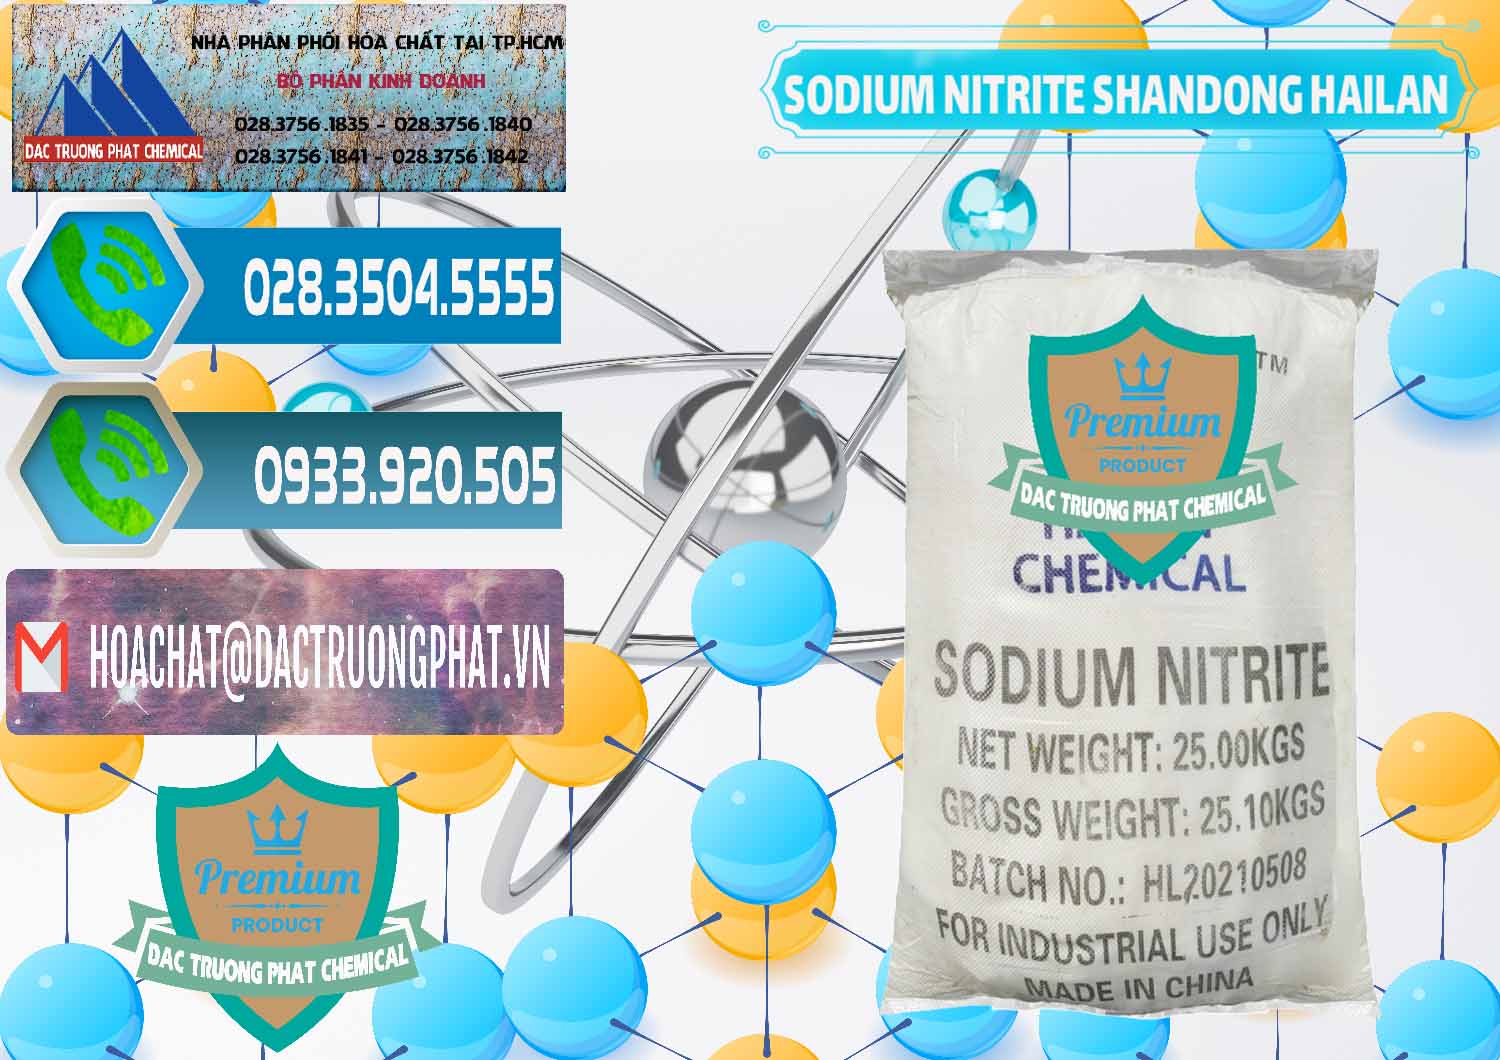 Cty cung cấp & bán Sodium Nitrite - NANO2 99.3% Shandong Hailan Trung Quốc China - 0284 - Công ty phân phối và cung cấp hóa chất tại TP.HCM - congtyhoachat.net